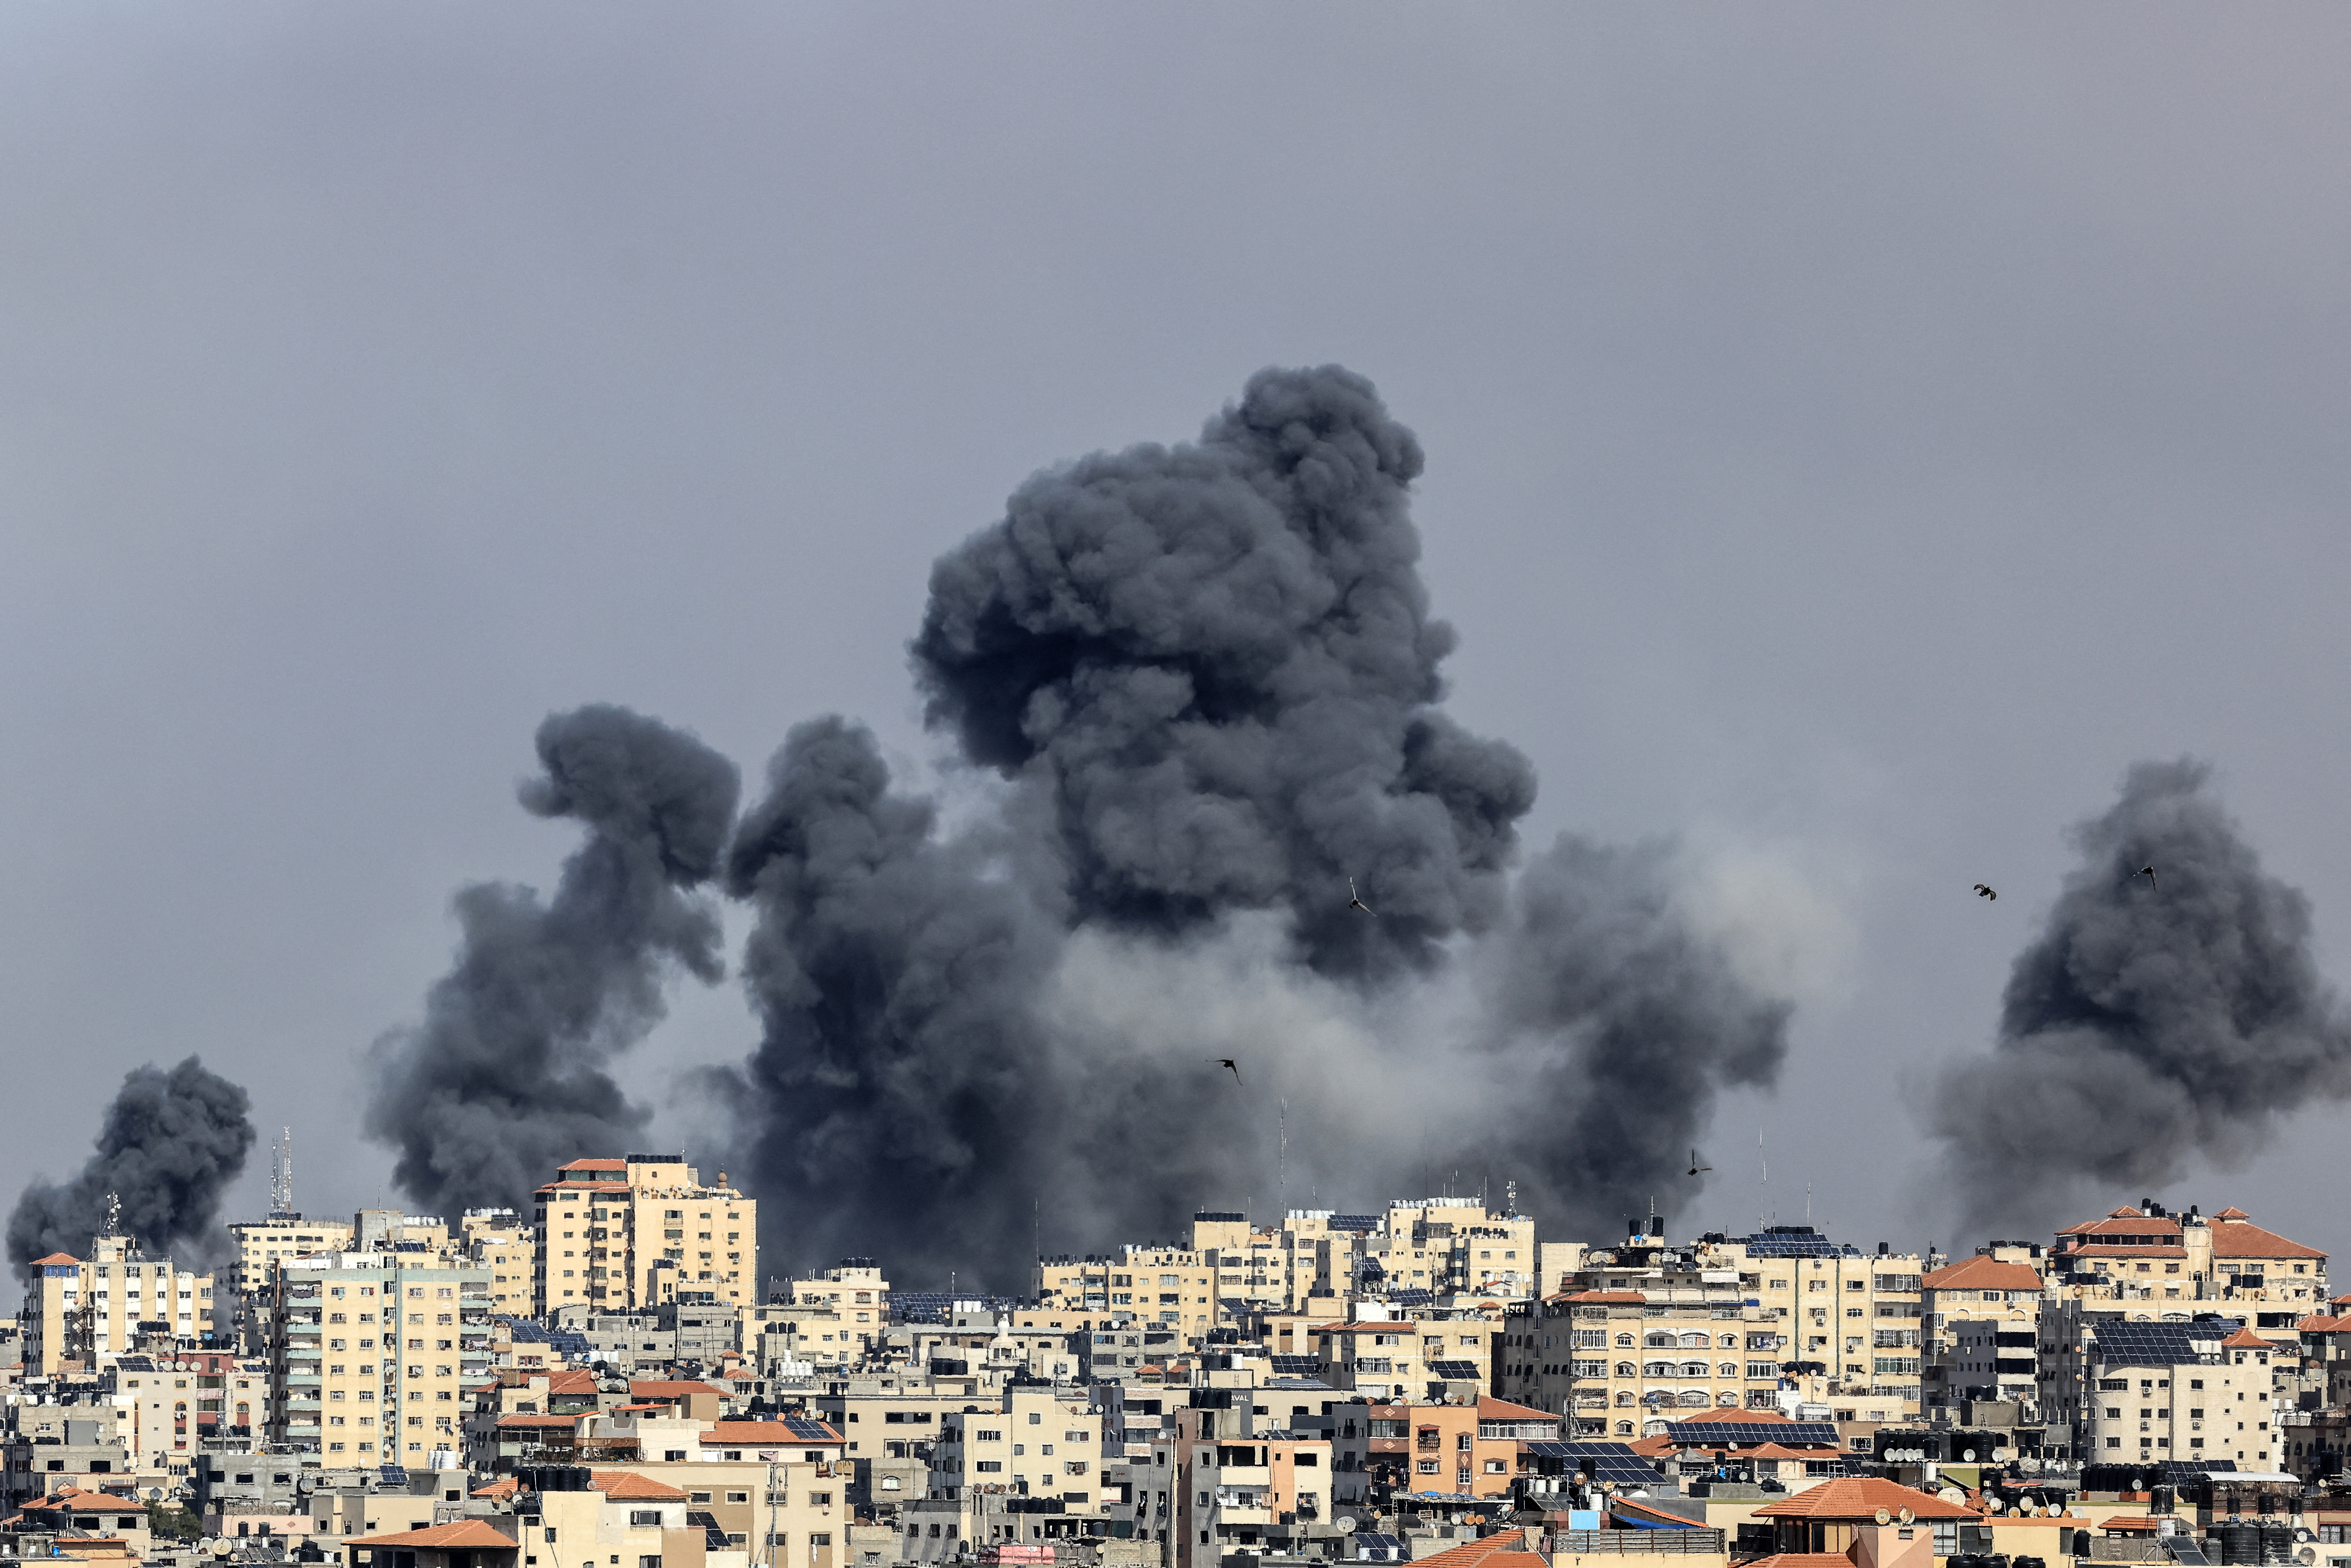 Parem', diz papa sobre o conflito entre Hamas e Israel, Mundo